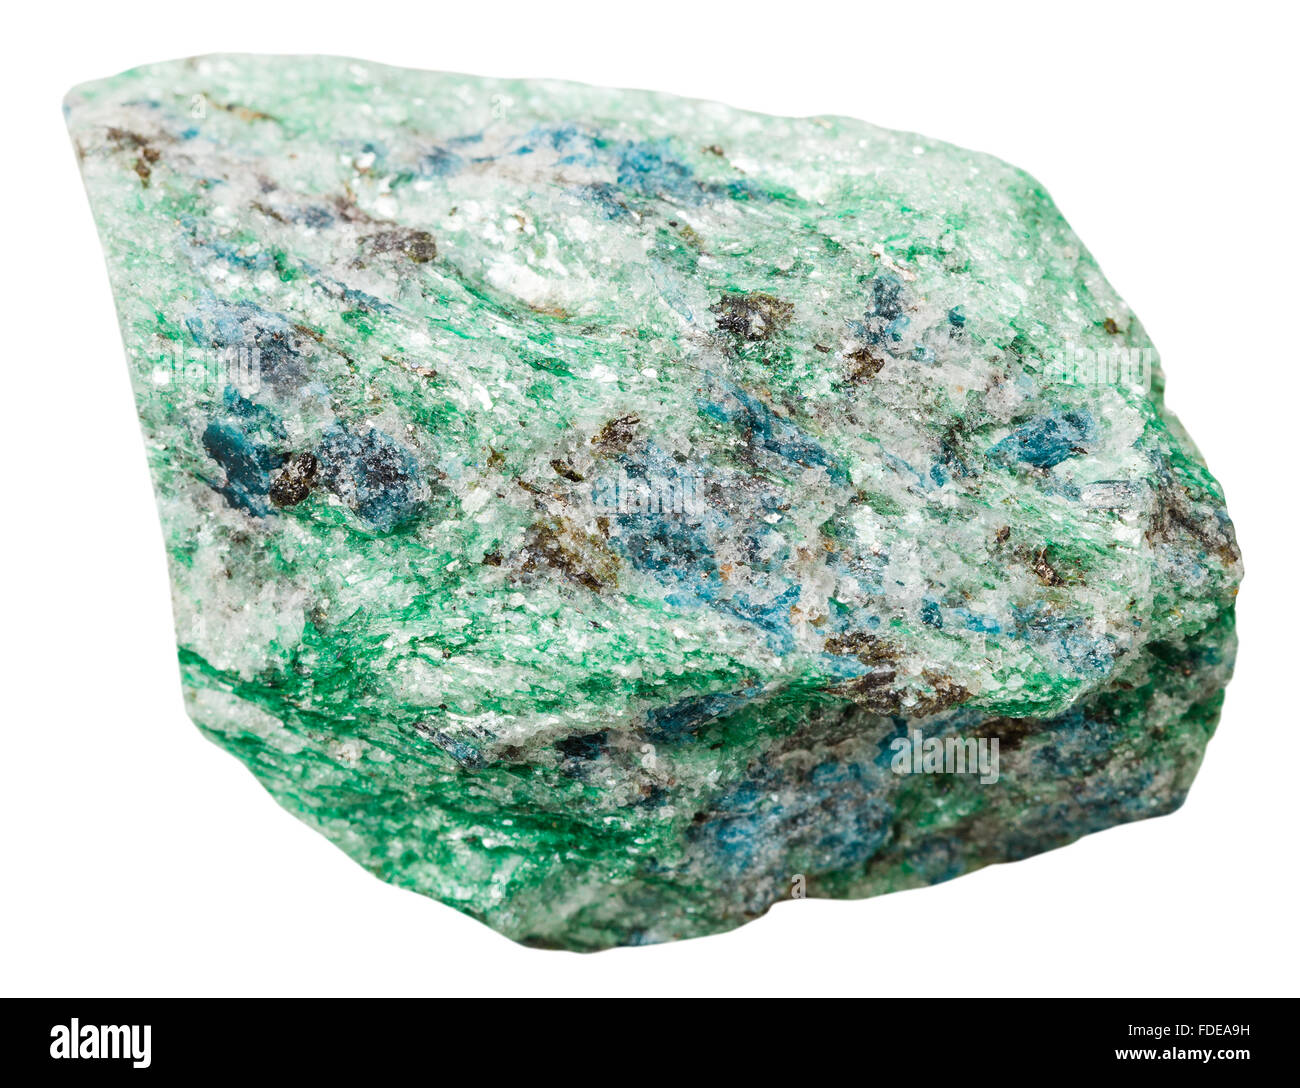 Makroaufnahmen Kollektion Naturstein - kristalline Fuchsite (Chrom-Glimmer) Mineral Stein isoliert auf weißem Hintergrund Stockfoto